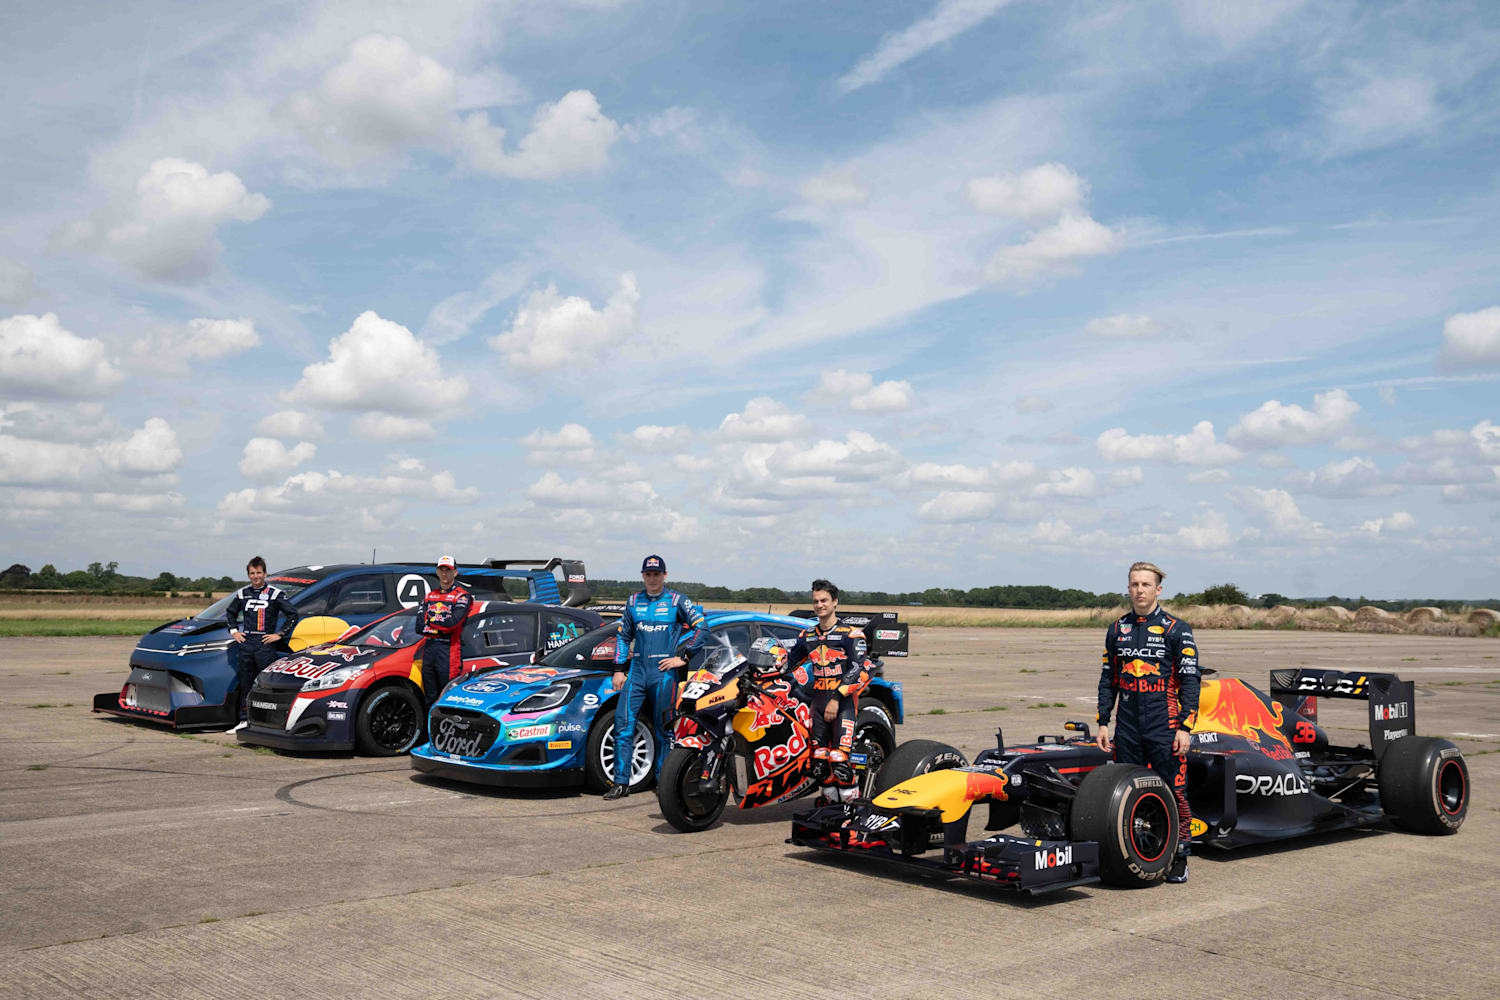 2023 Red Bull Team Kit : r/formula1